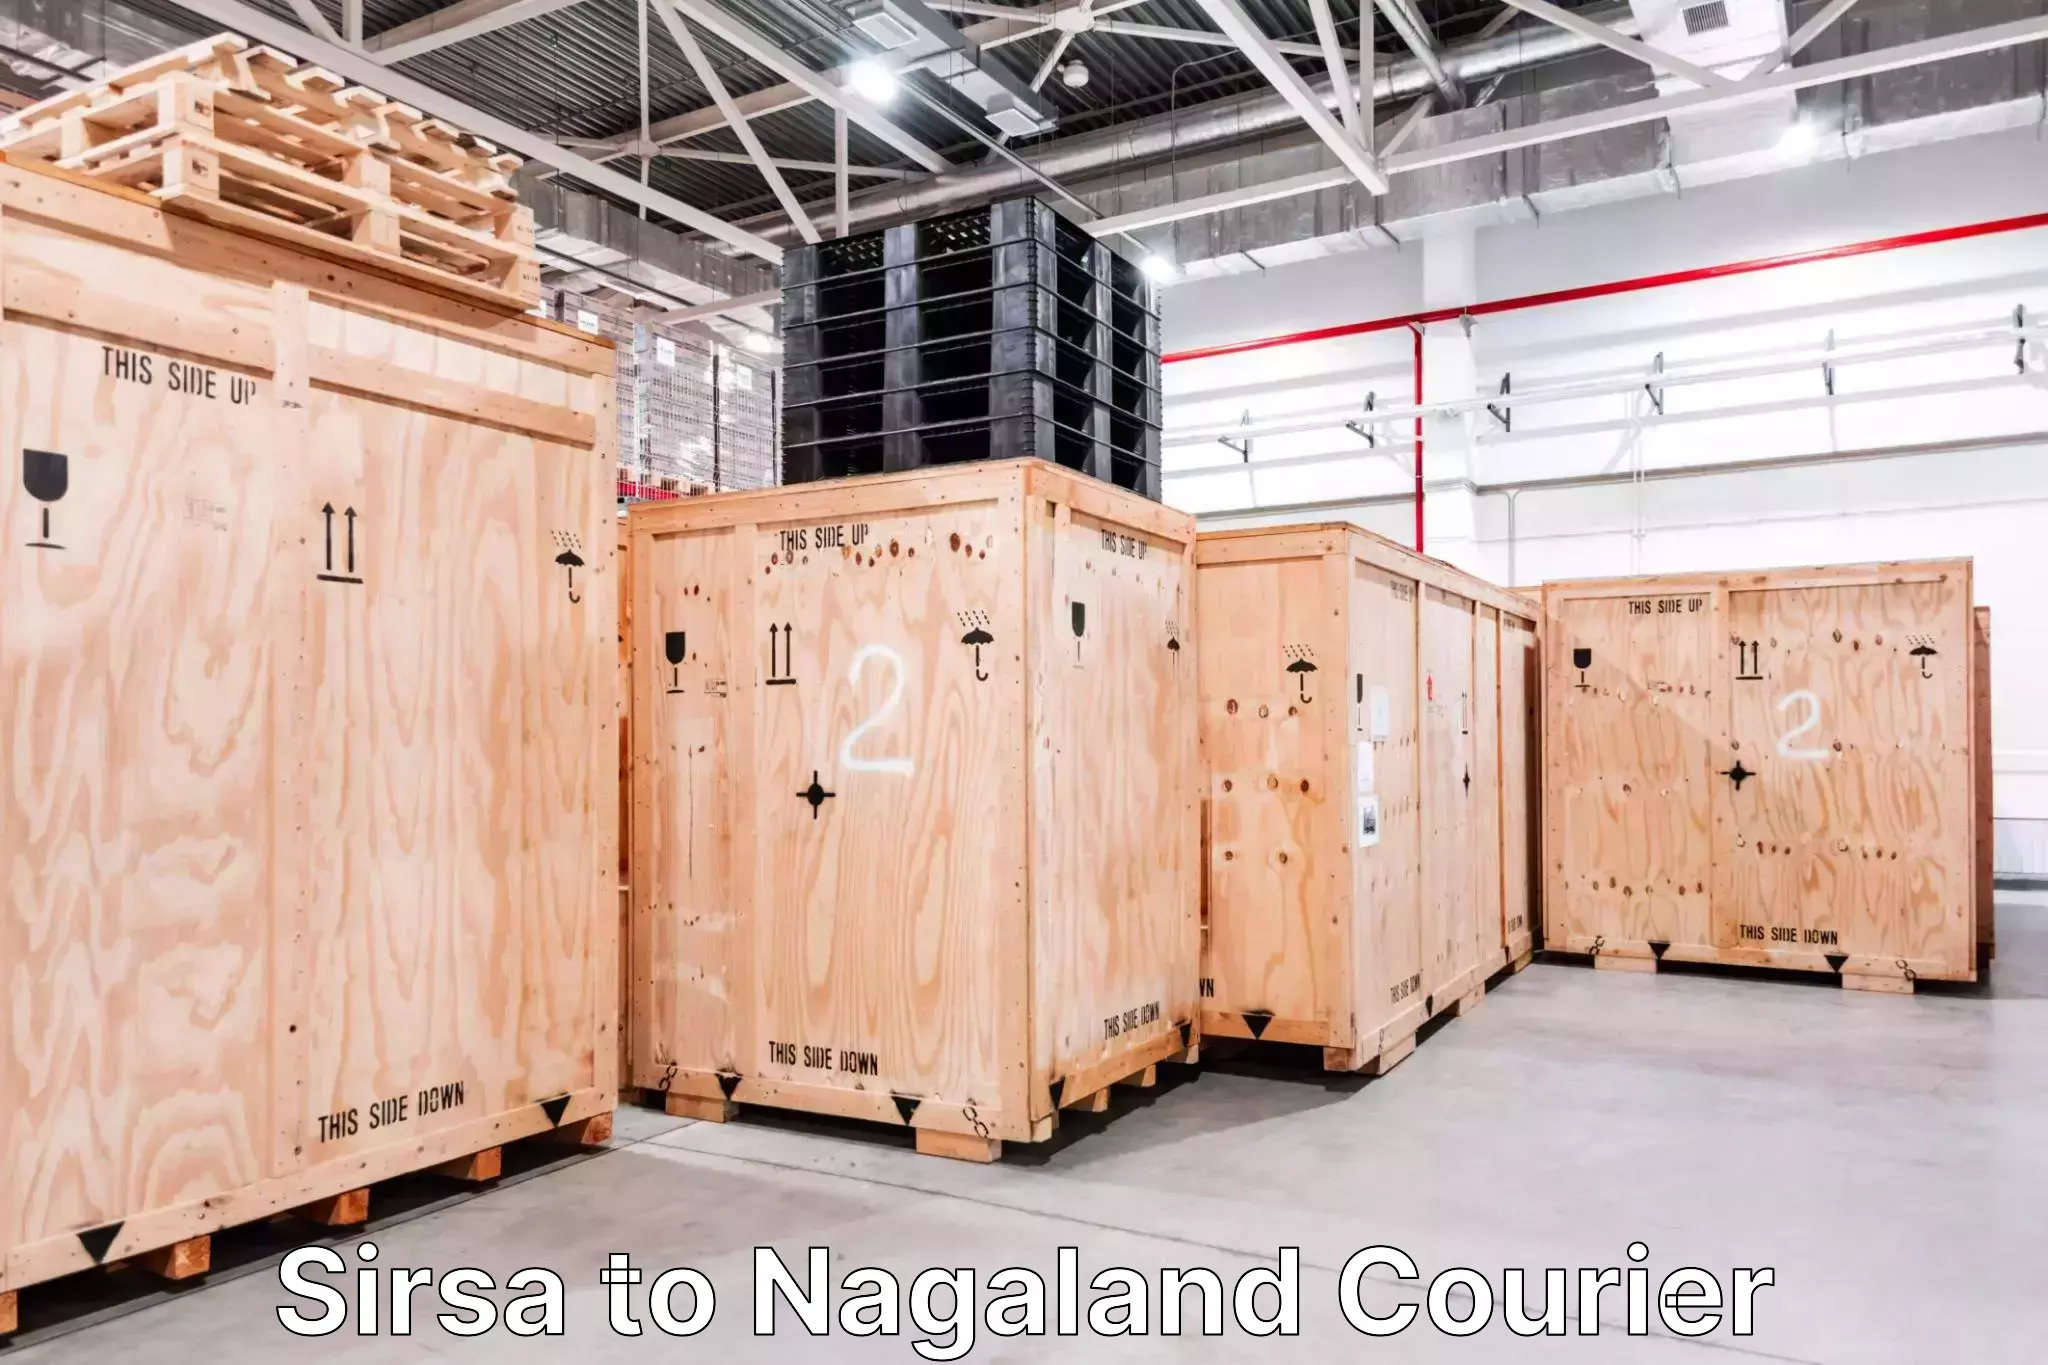 Baggage transport professionals Sirsa to NIT Nagaland